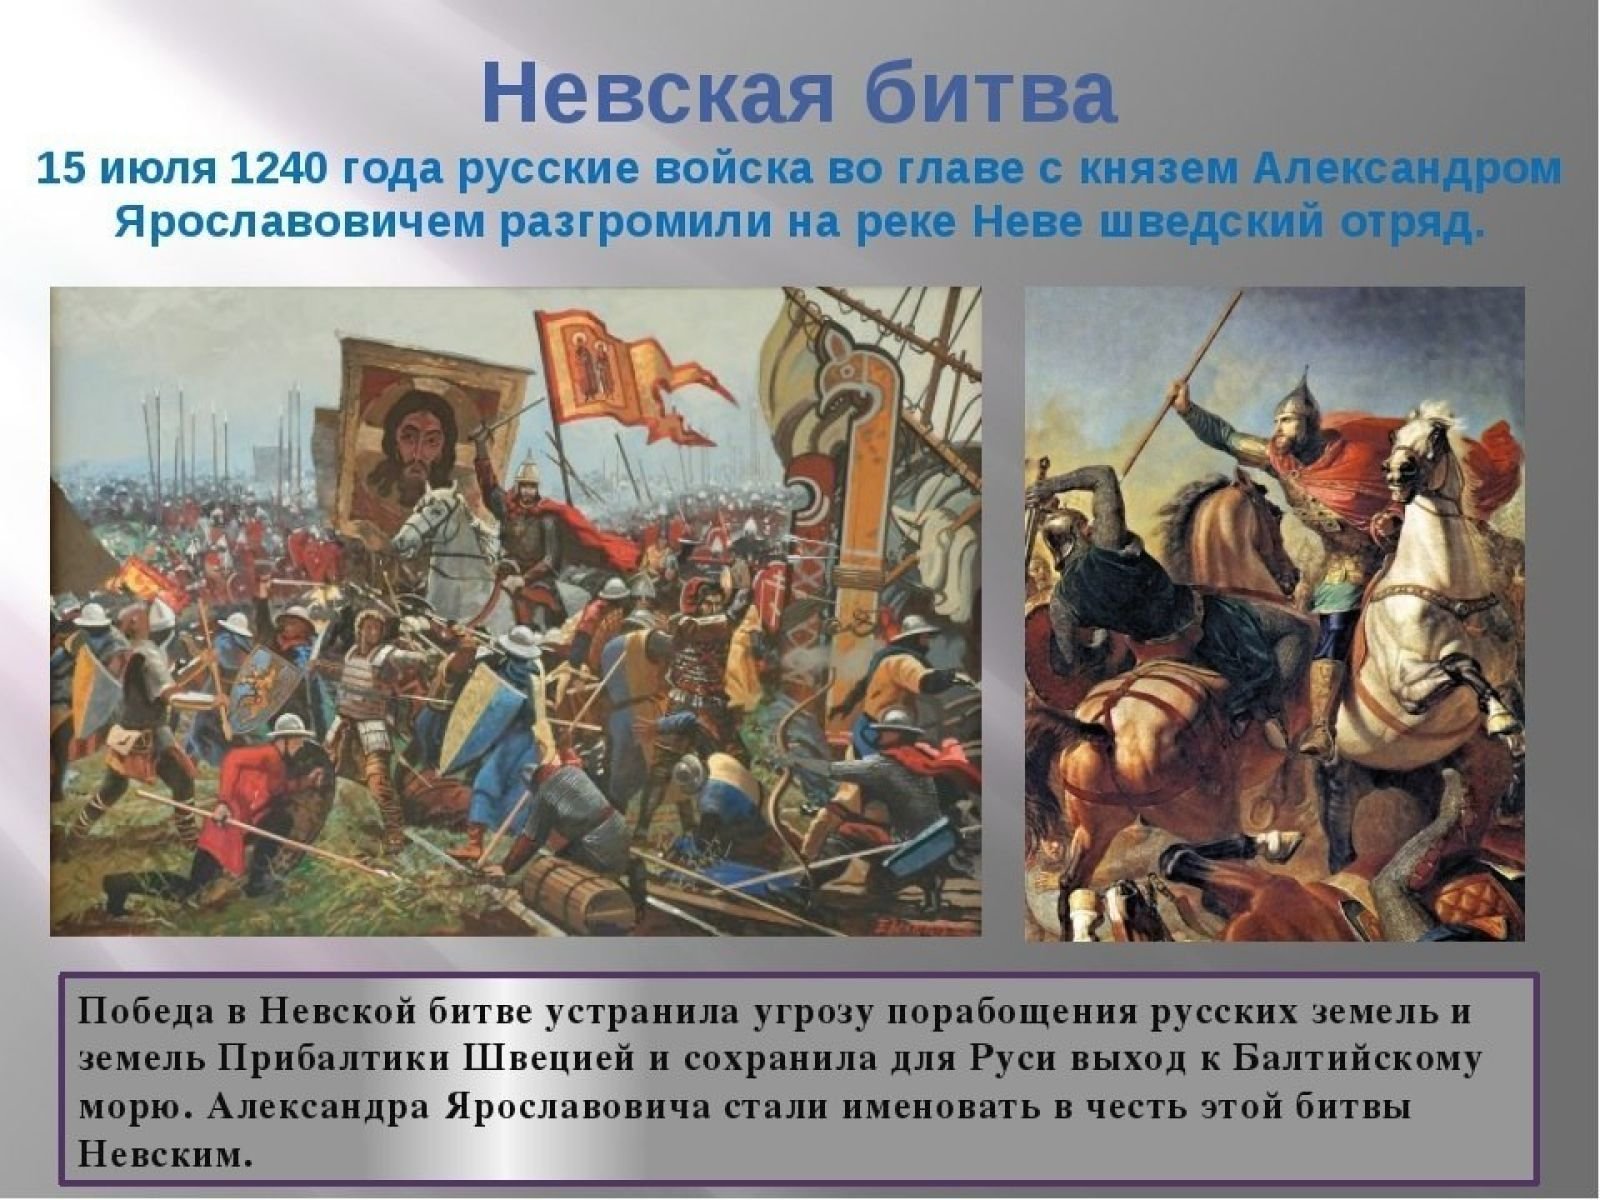 1240 гк. 15 Июля 1240 г. русские войска разбили Шведов в Невской битве. 15 Июля 1240 года состоялась Невская битва..